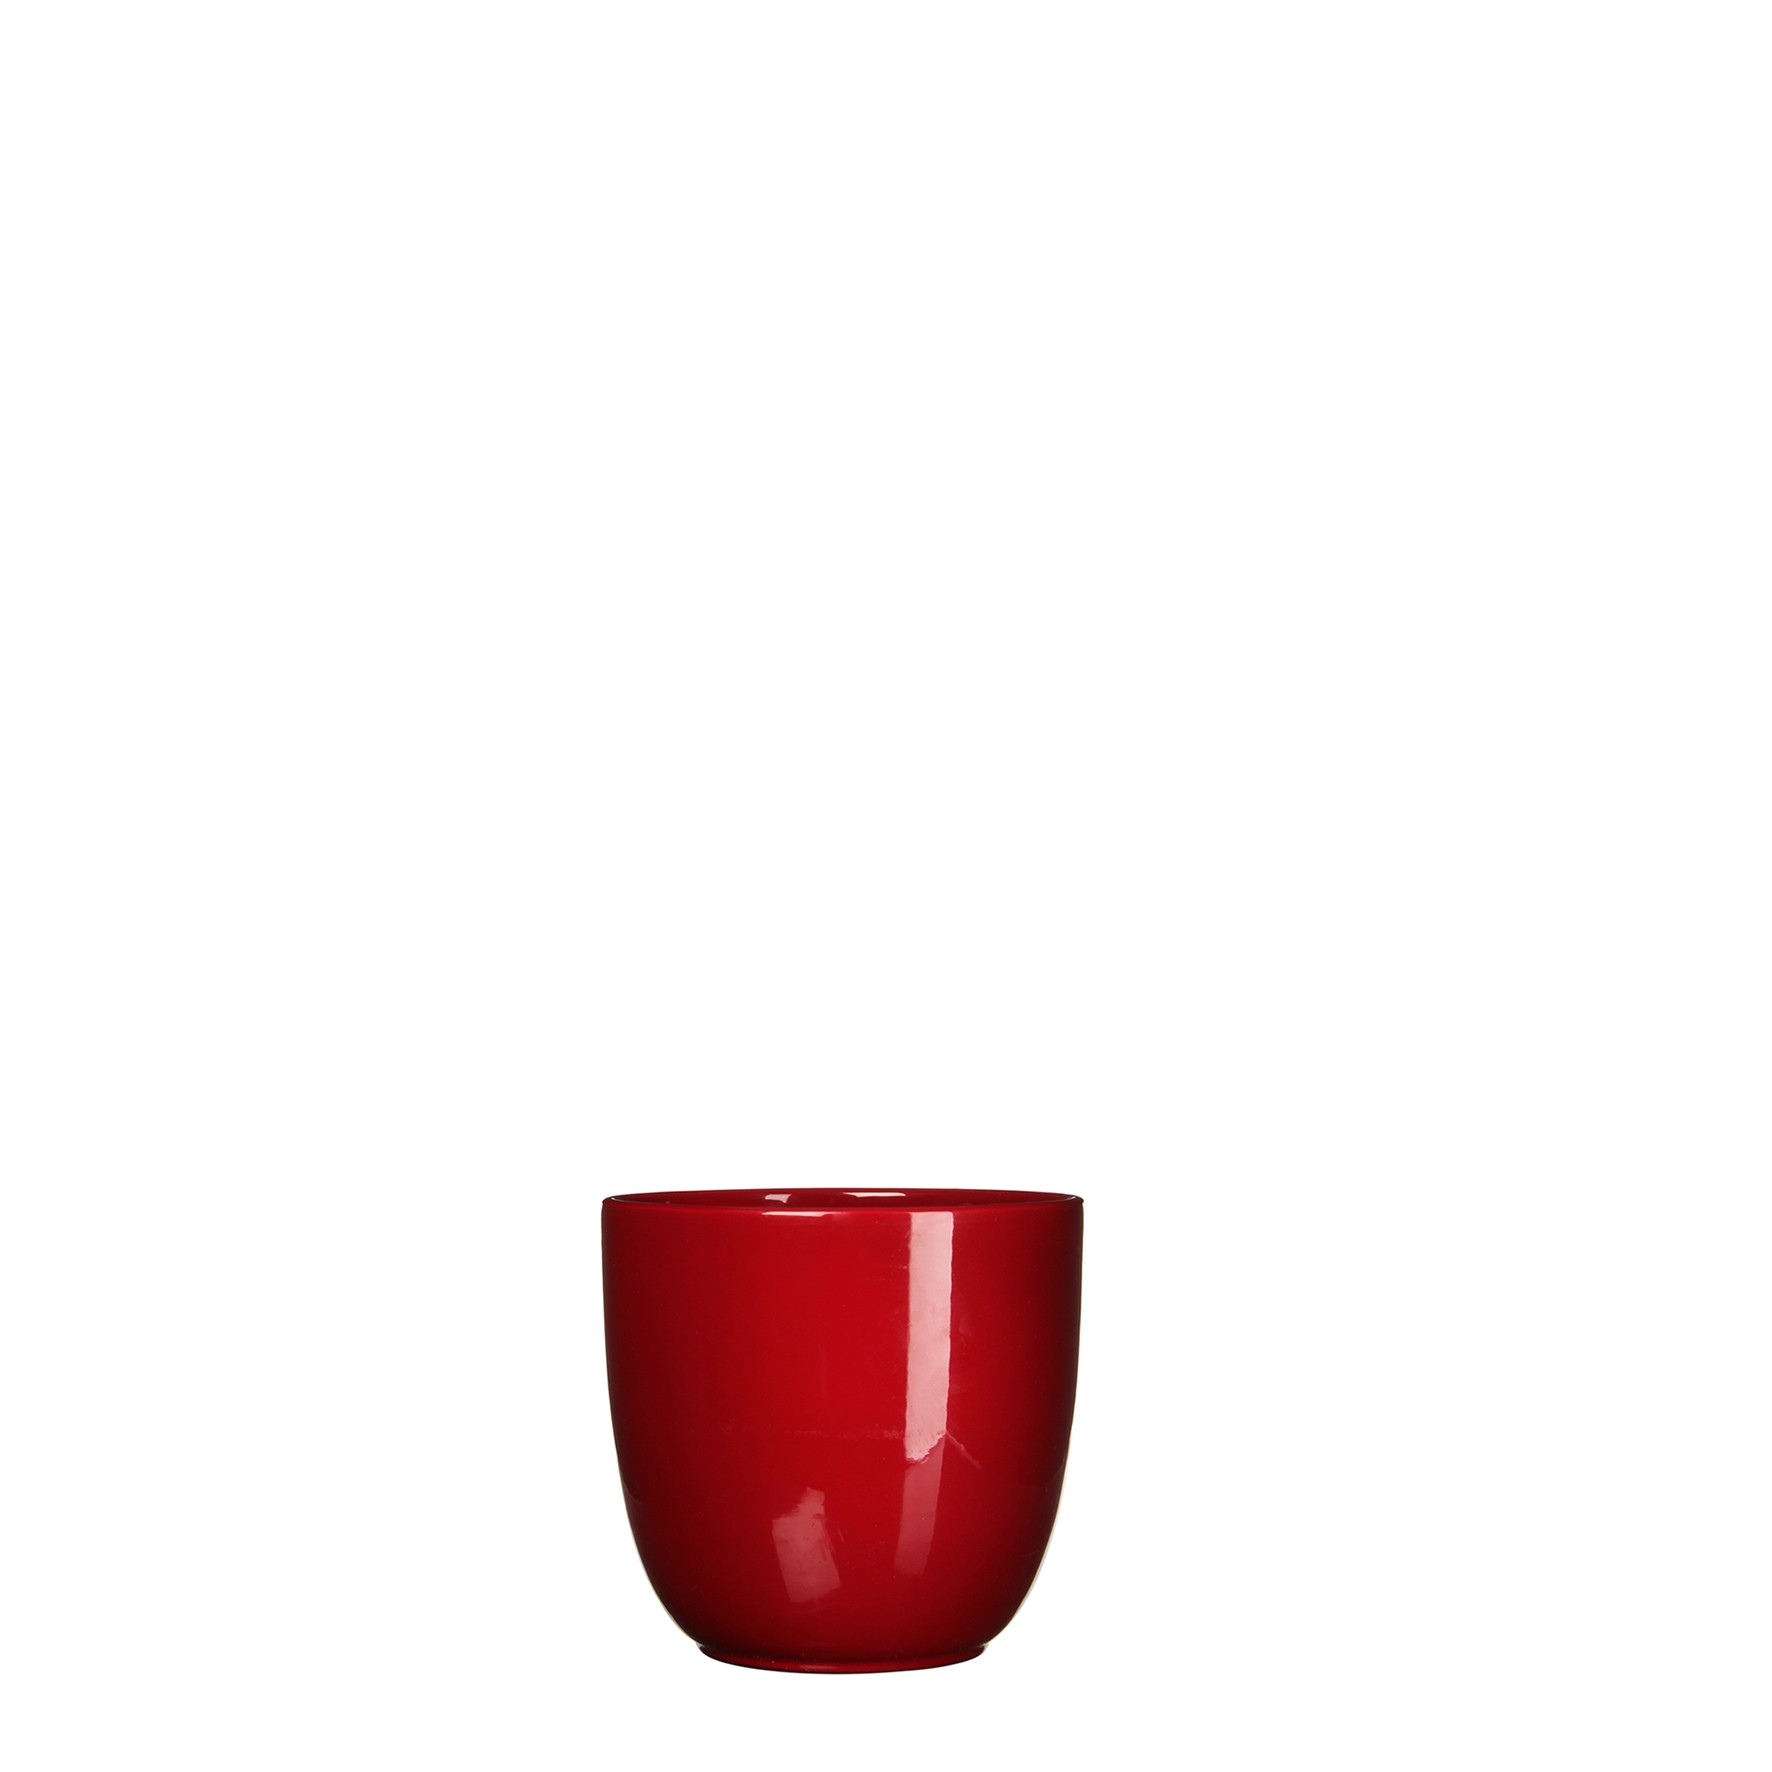 Bloempot Pot rond es/7 tusca 7.5 x 8.5 cm d.rood Mica